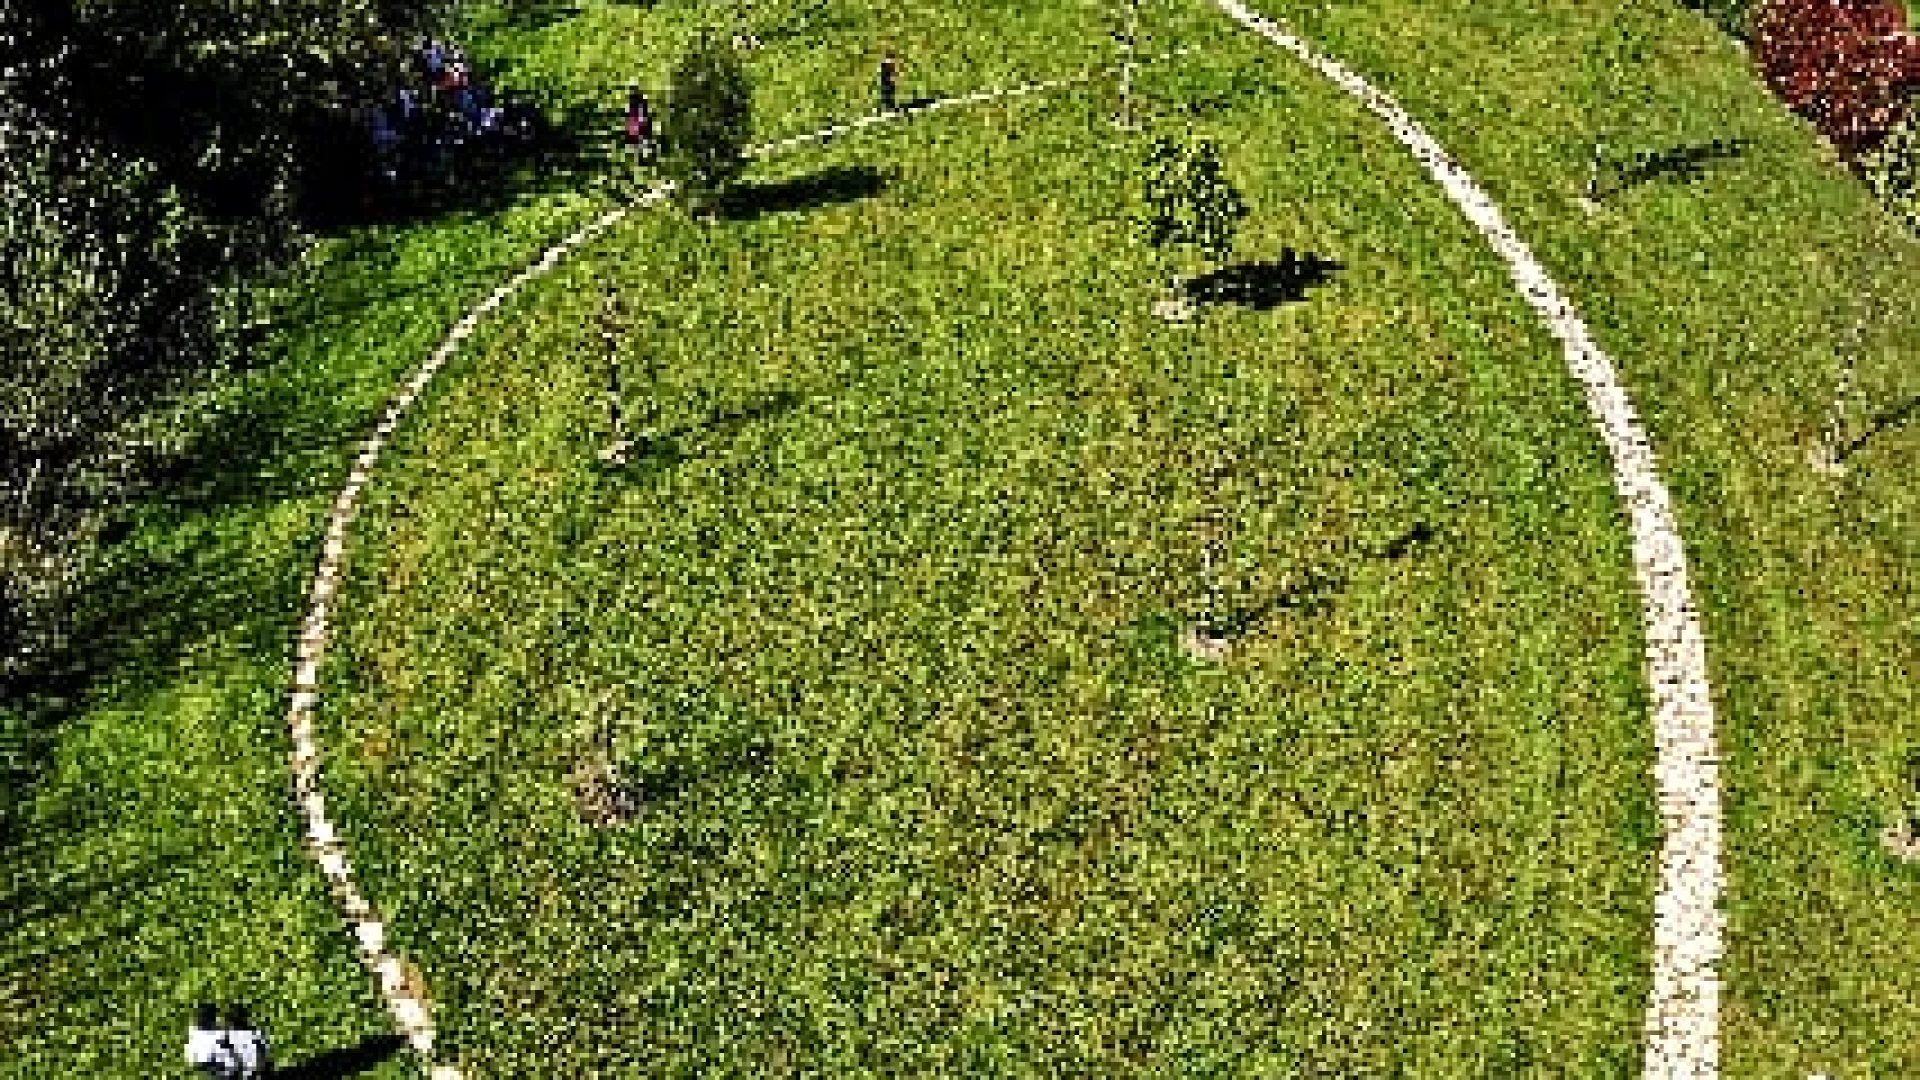 Coltivazione degli olivi, domenica 5 maggio l’incontro promosso dall’Arboreto “Giancarlo Cipressi” di Santa Maria Arabona-Manoppello